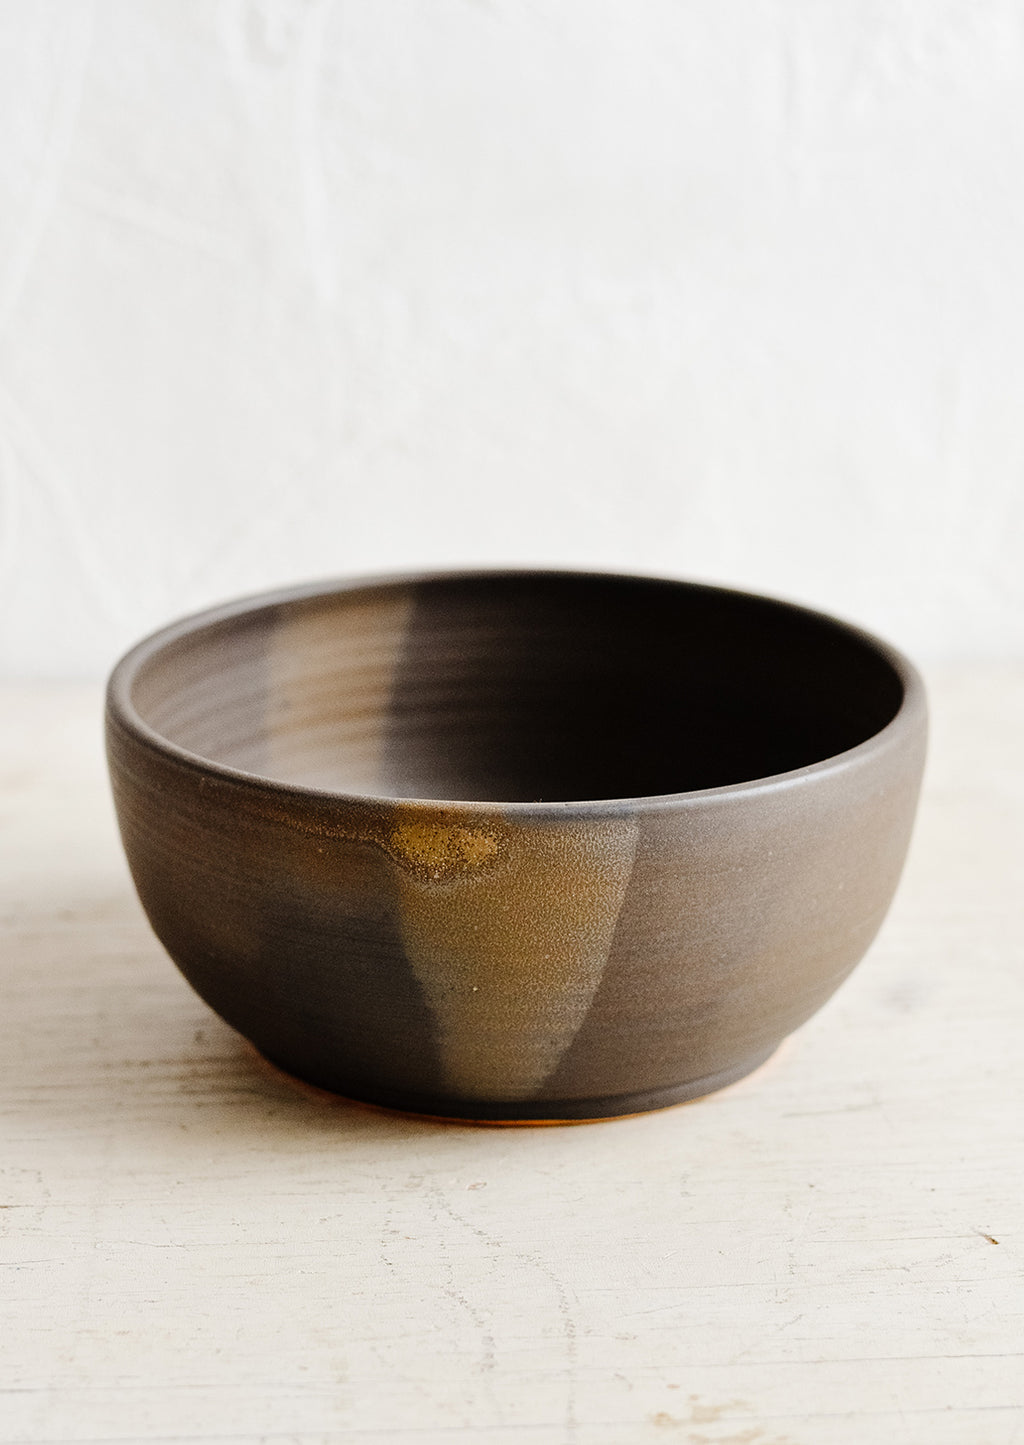 Matte Earth / Soup Bowl: A ceramic soup bowl in matte brown.